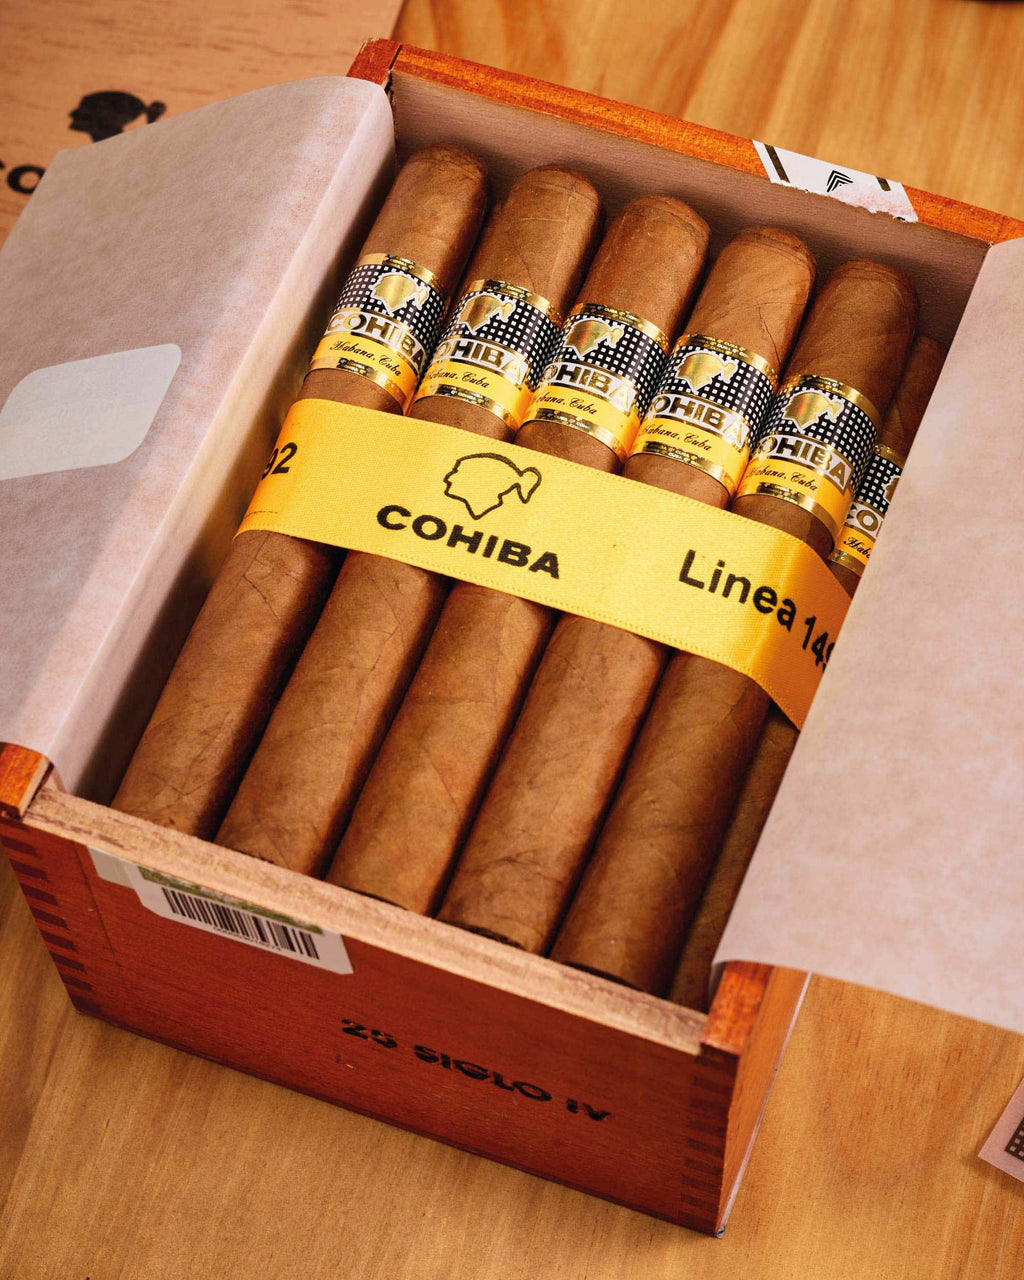 Cigarrenversand24, Cohiba Siglo I